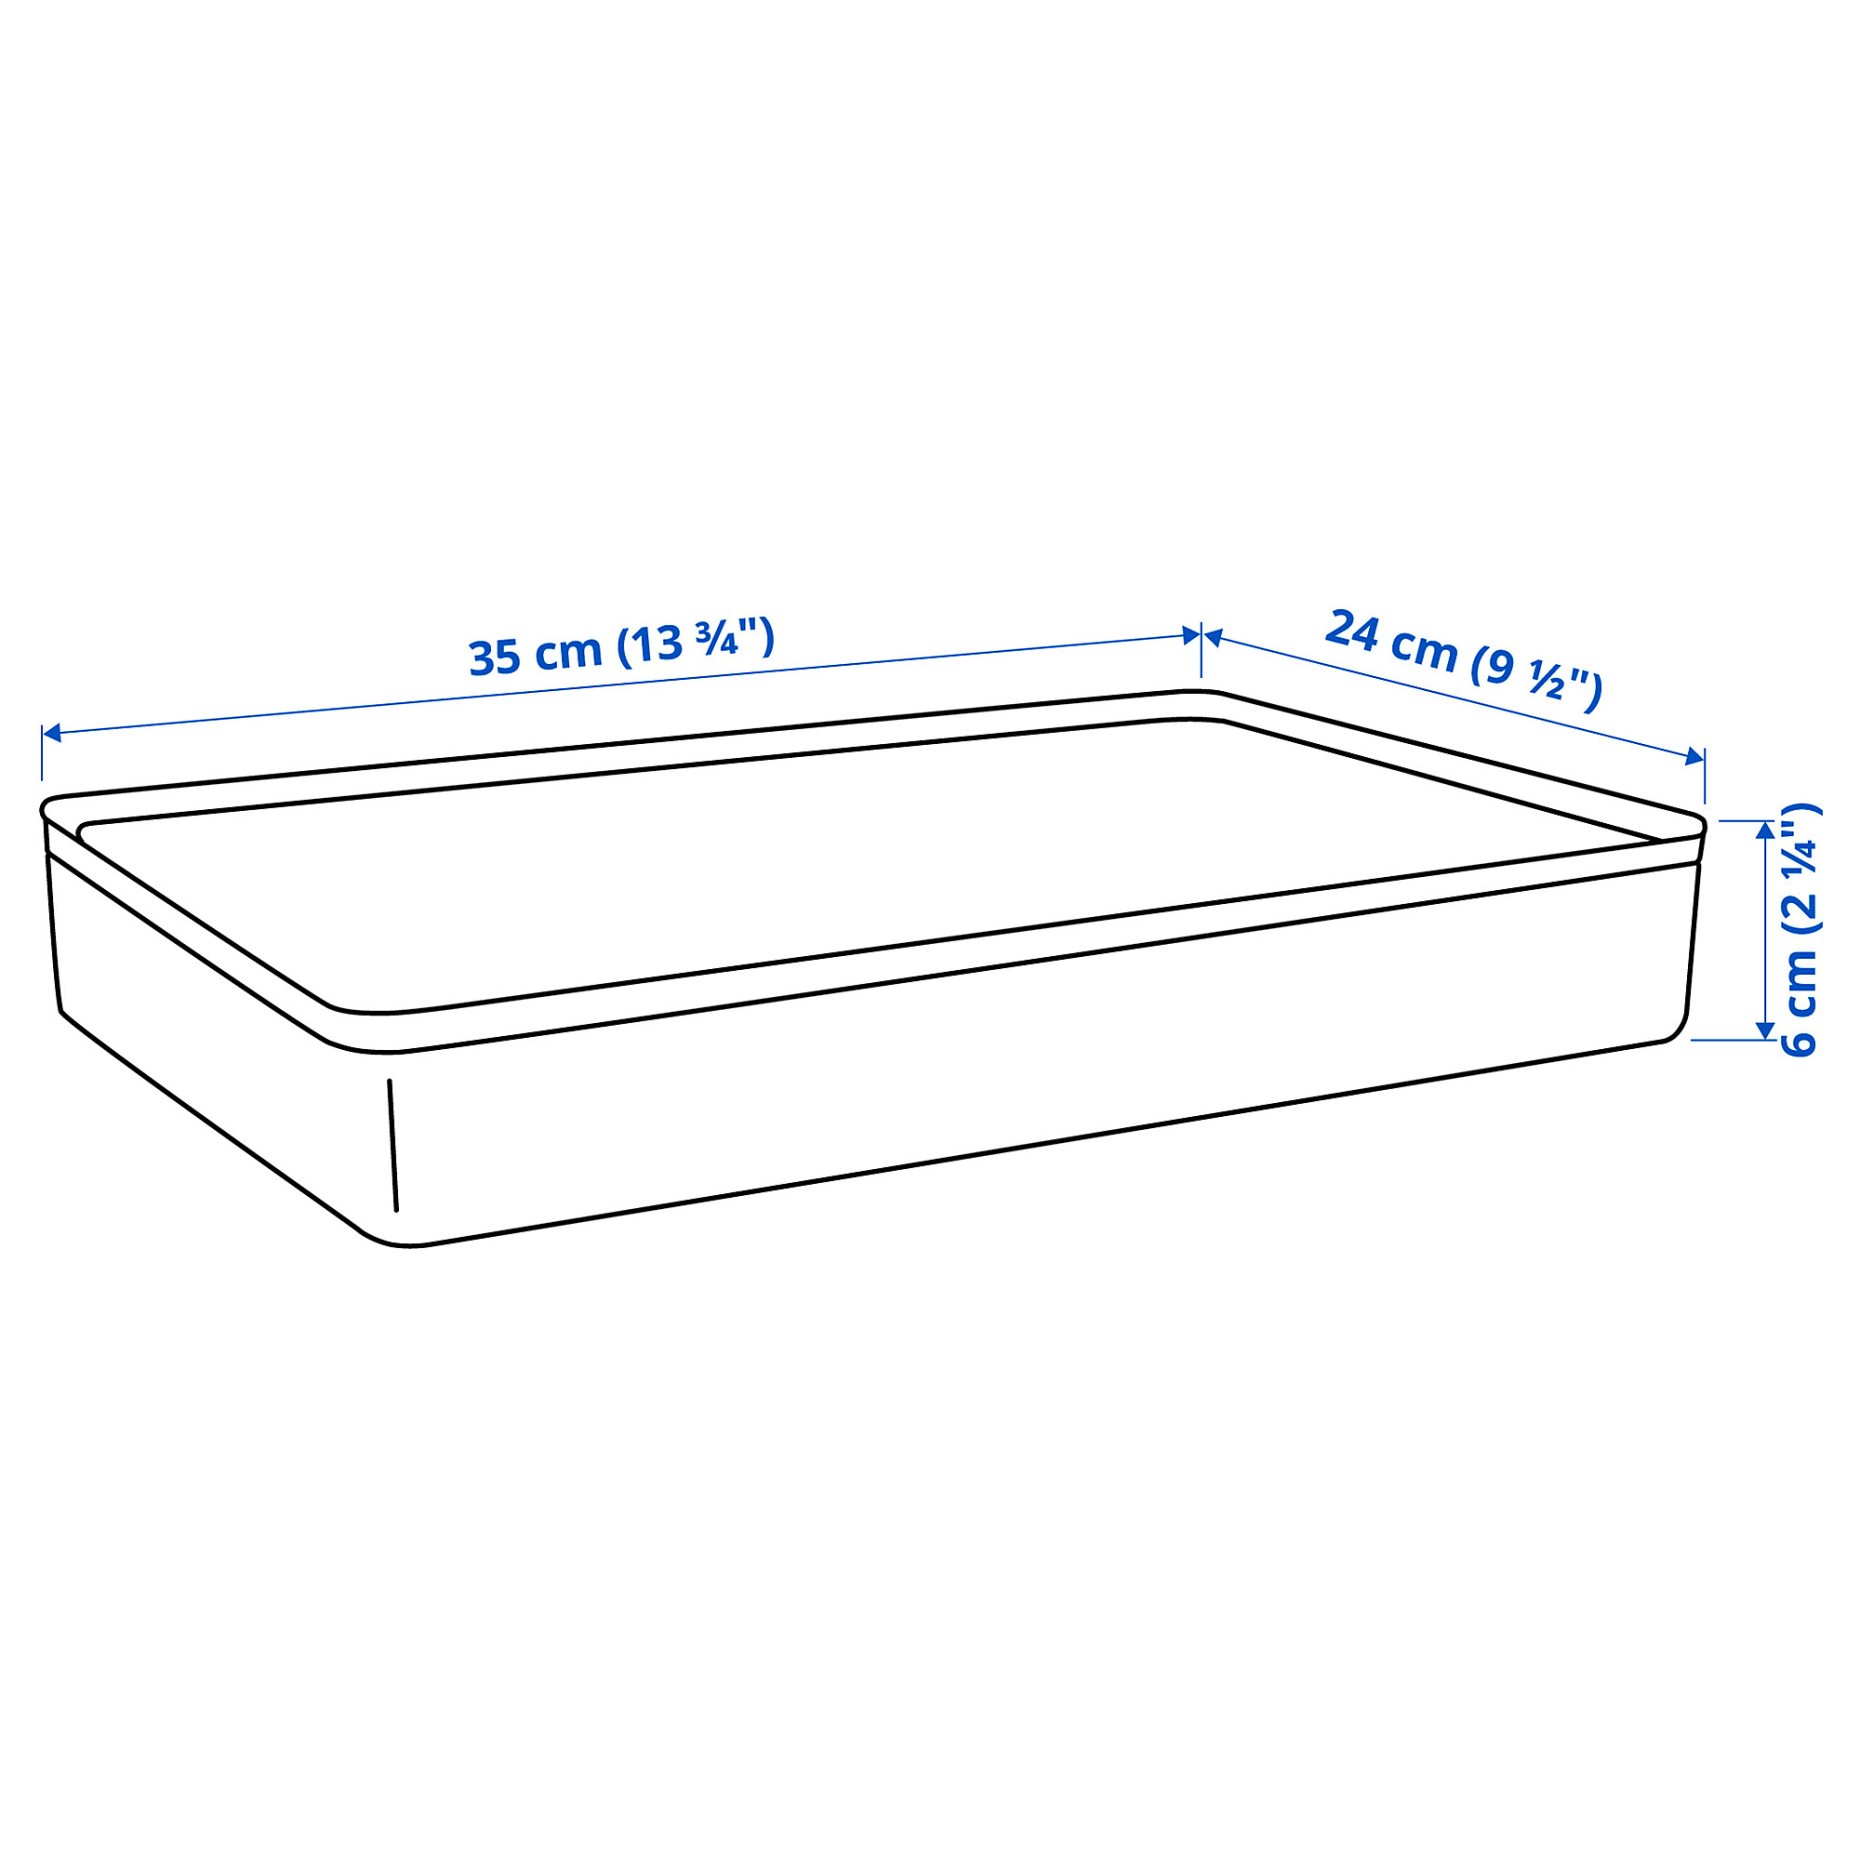 HARVMATTA, box with lid, 24x35x6 cm, 305.553.00